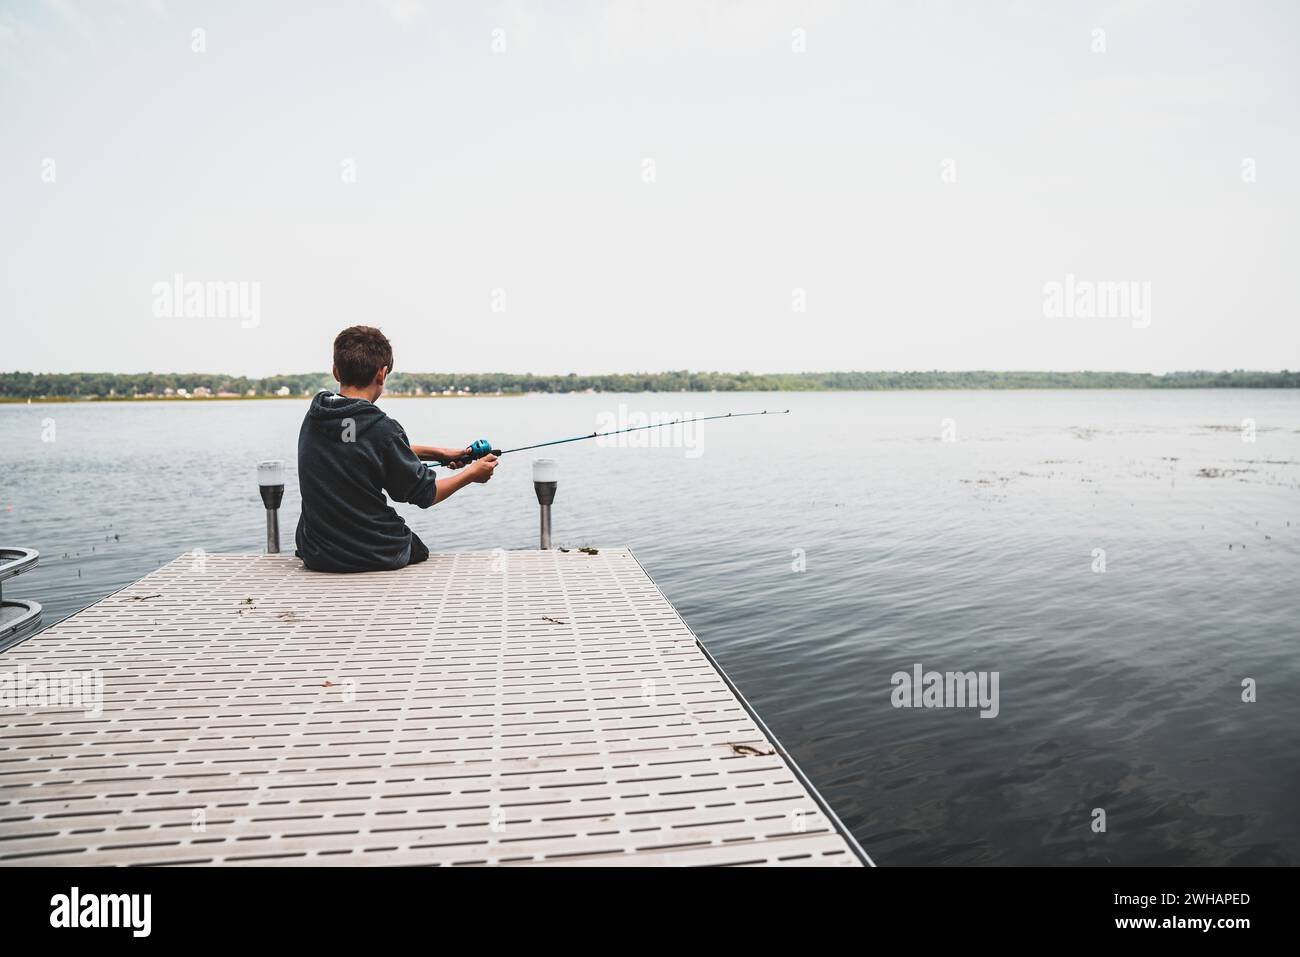 Le jeune garçon va pêcher au large D'Un quai Banque D'Images